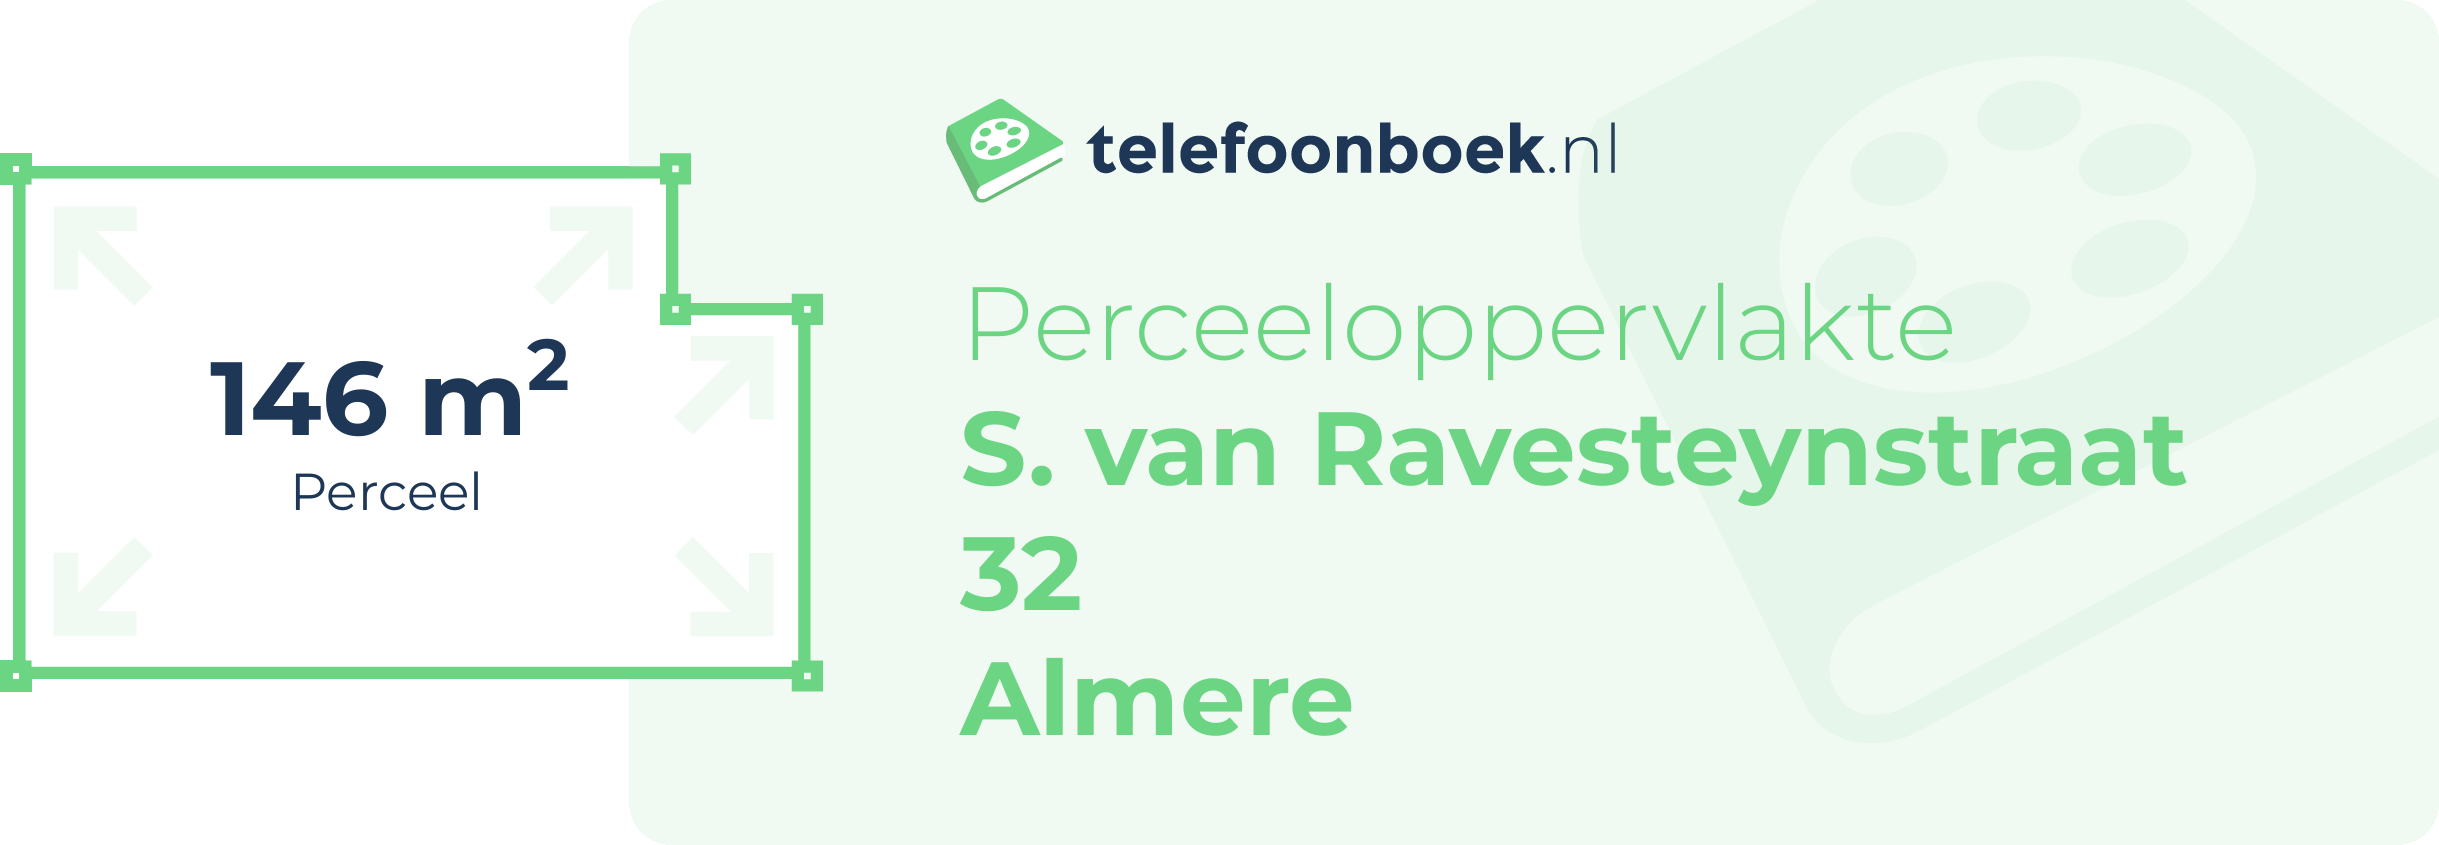 Perceeloppervlakte S. Van Ravesteynstraat 32 Almere